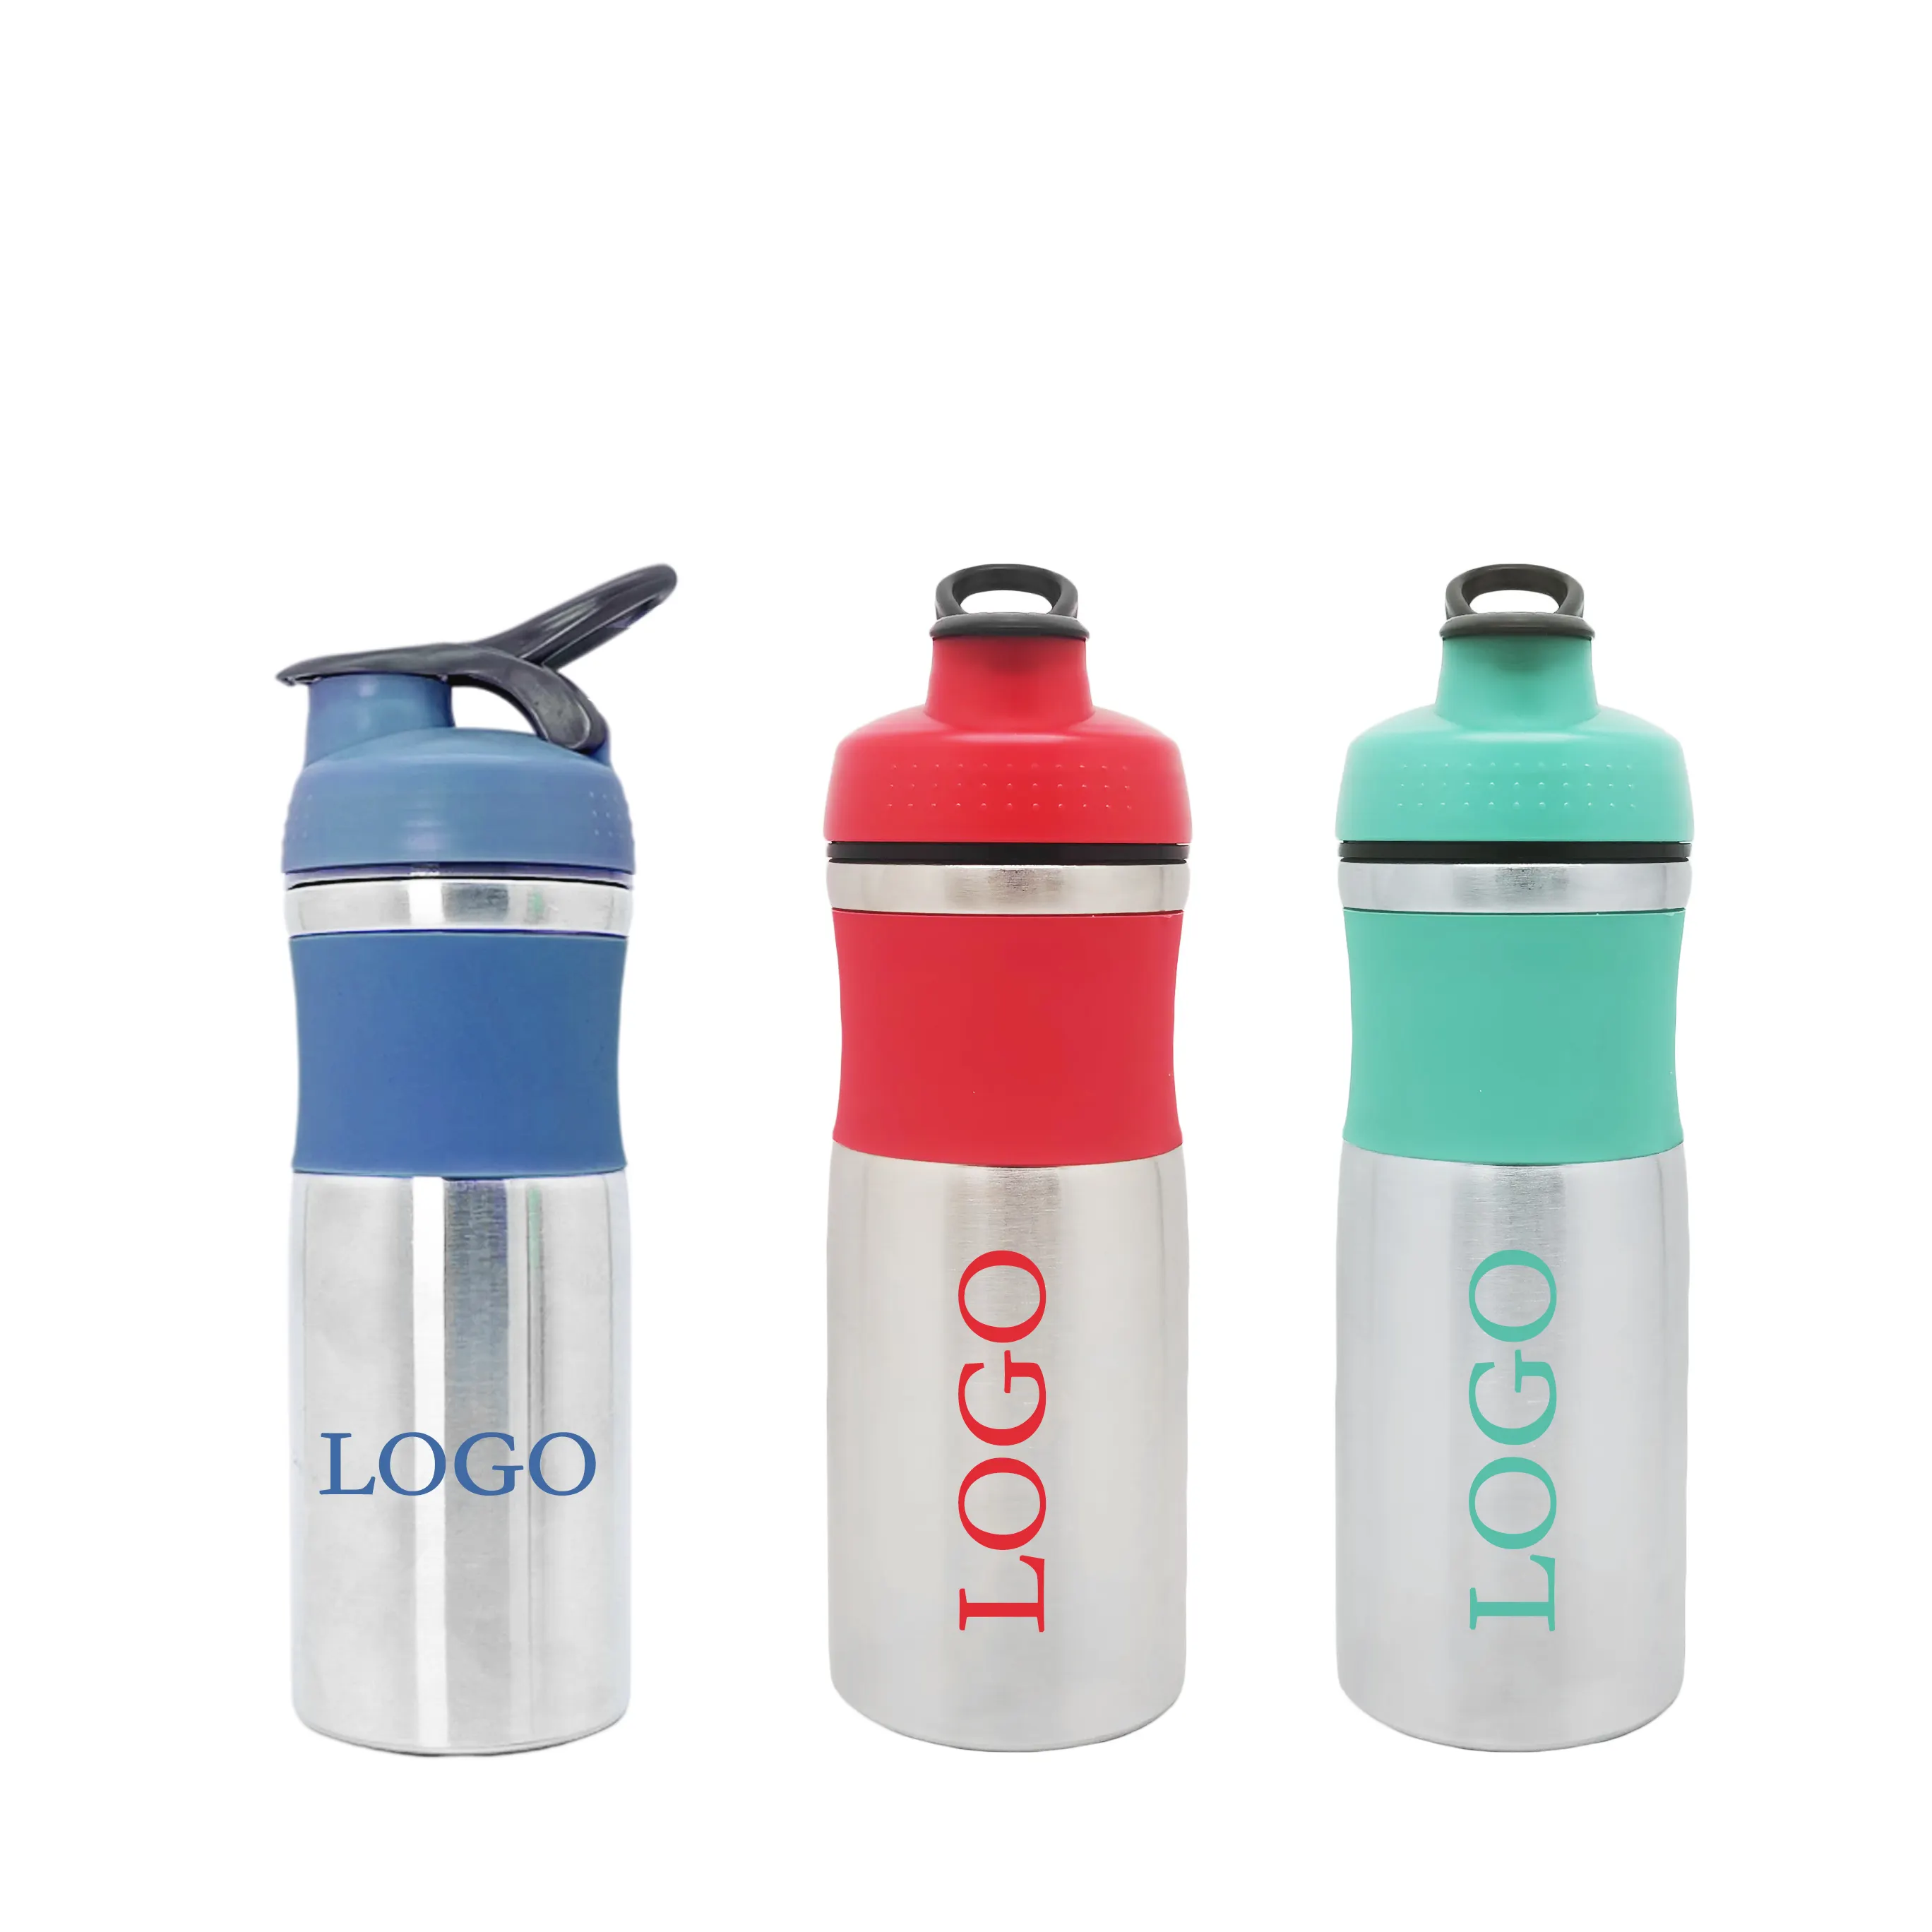 Logo Benutzer definierte einwand ige Shaker-Flasche Gym Protein flasche Edelstahl-Shaker Protein-Wasser flasche